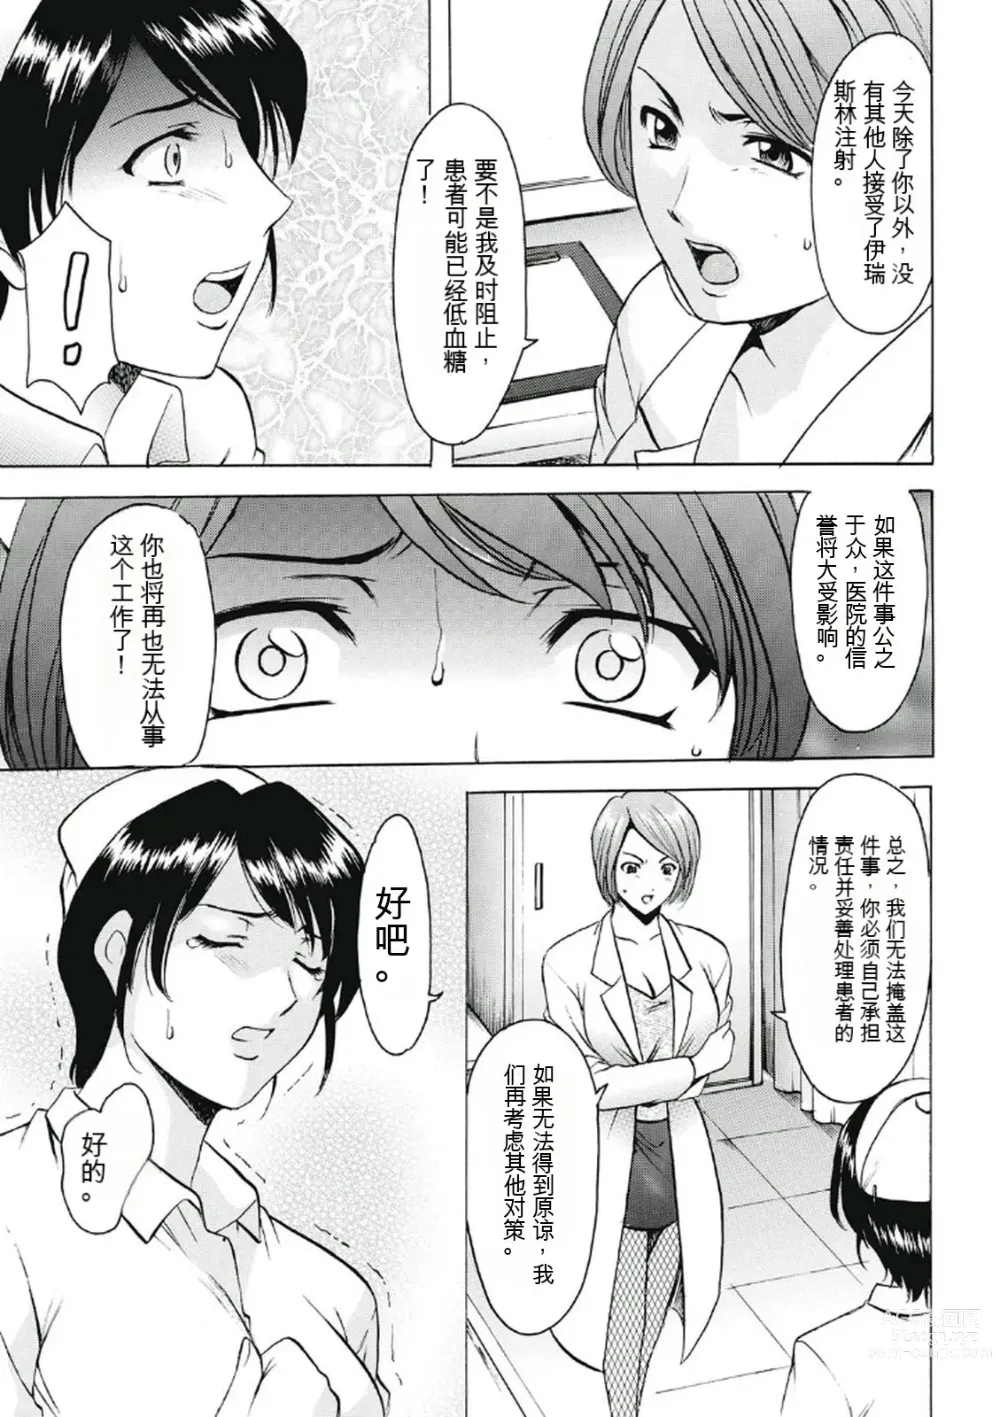 Page 9 of manga Chijoku Byoutou -Hakui no Datenshi-